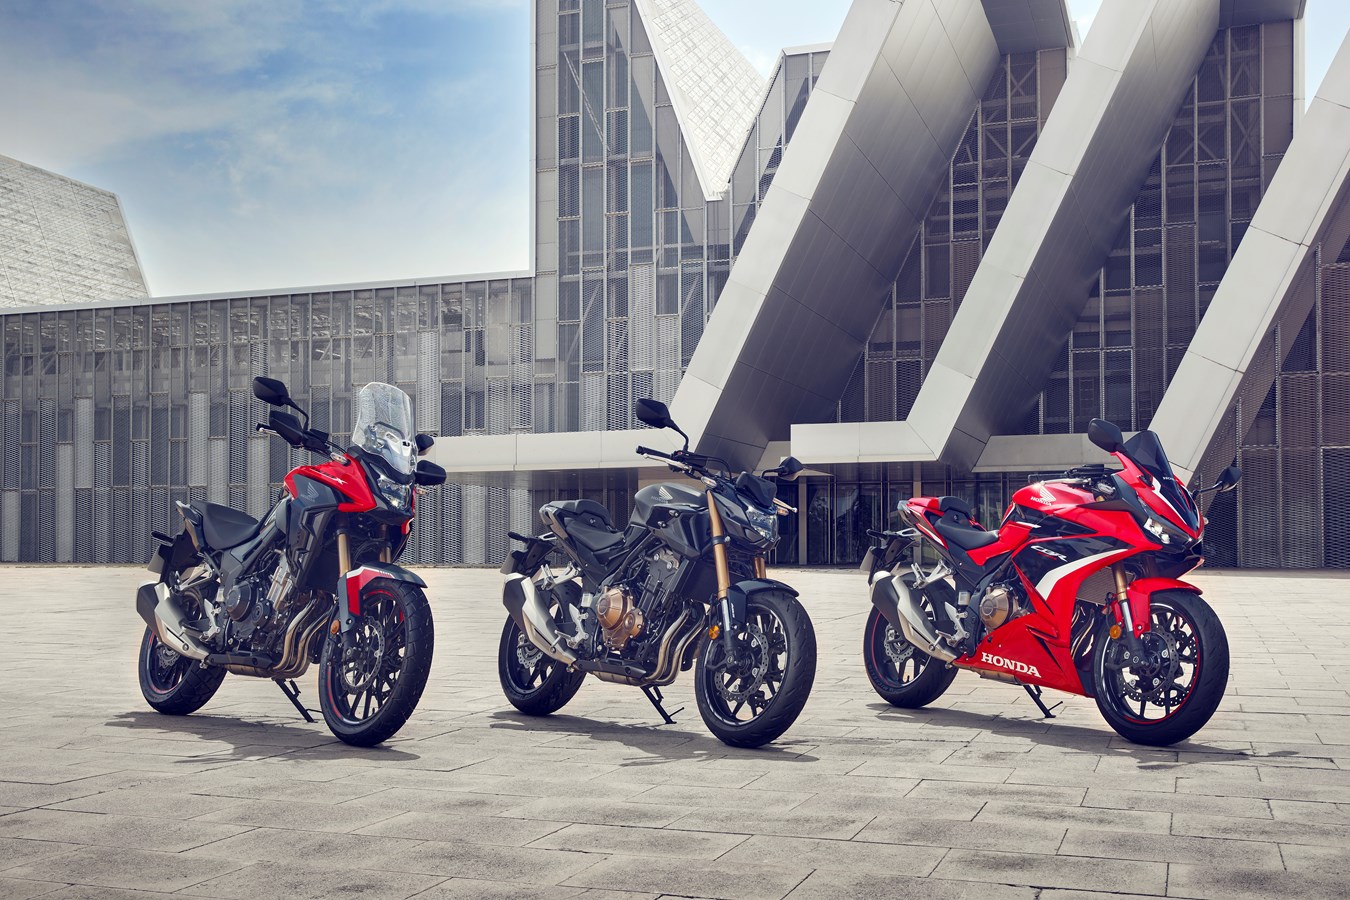 Trojice mimořádně oblíbených modelů značky Honda – CB500F, CBR500R a CB500X – získala pro modelový rok 2022 vylepšené motory a podvozek.